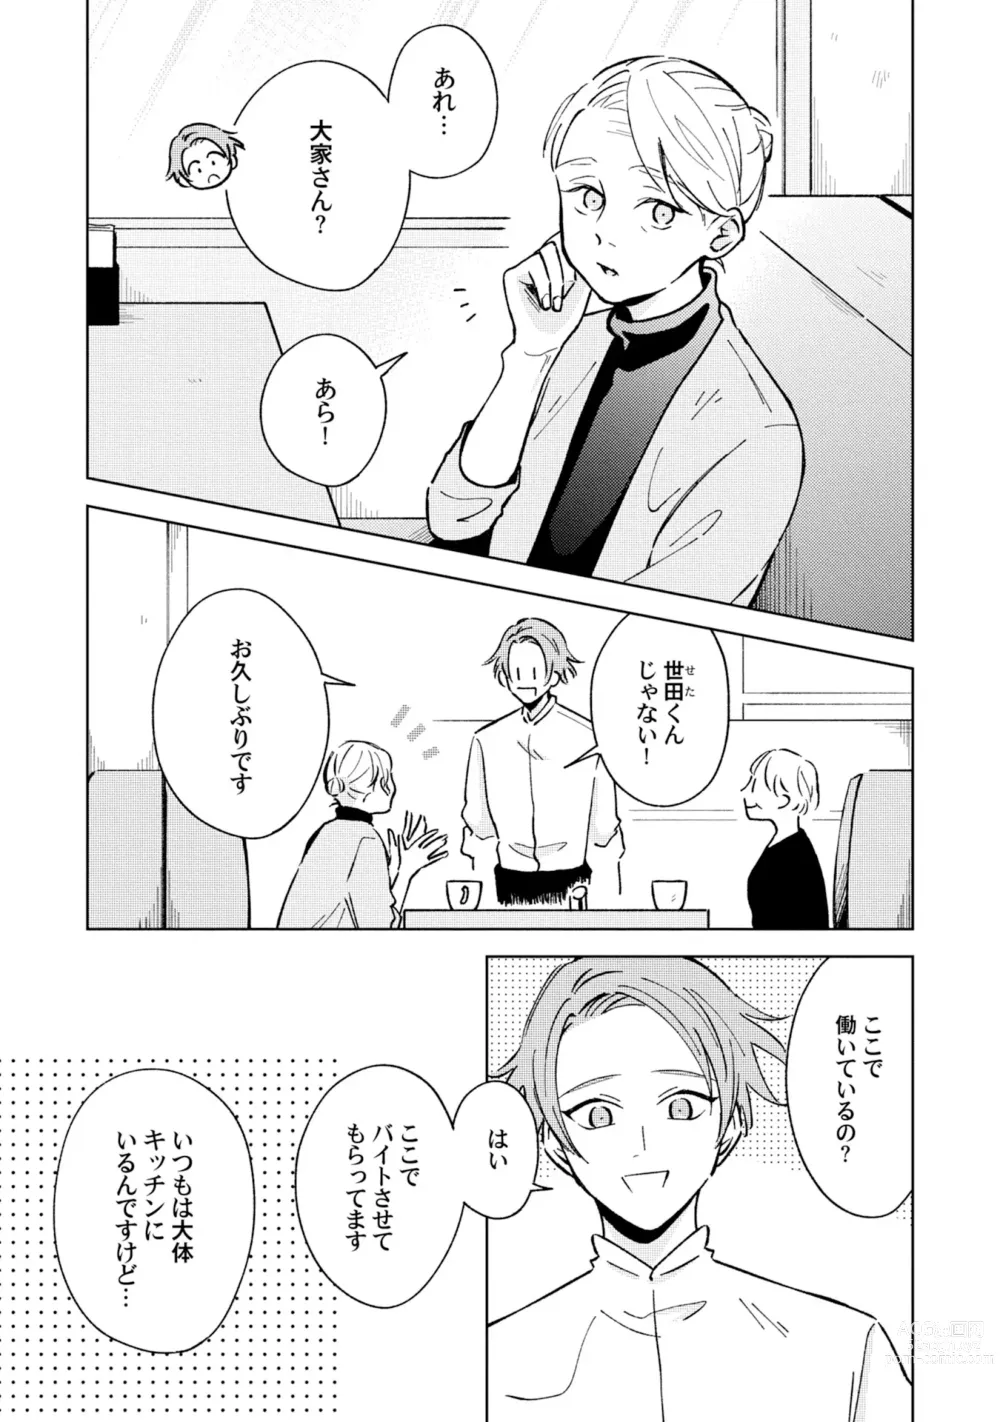 Page 5 of manga Toho 3-byou no Trouble Love Room 4